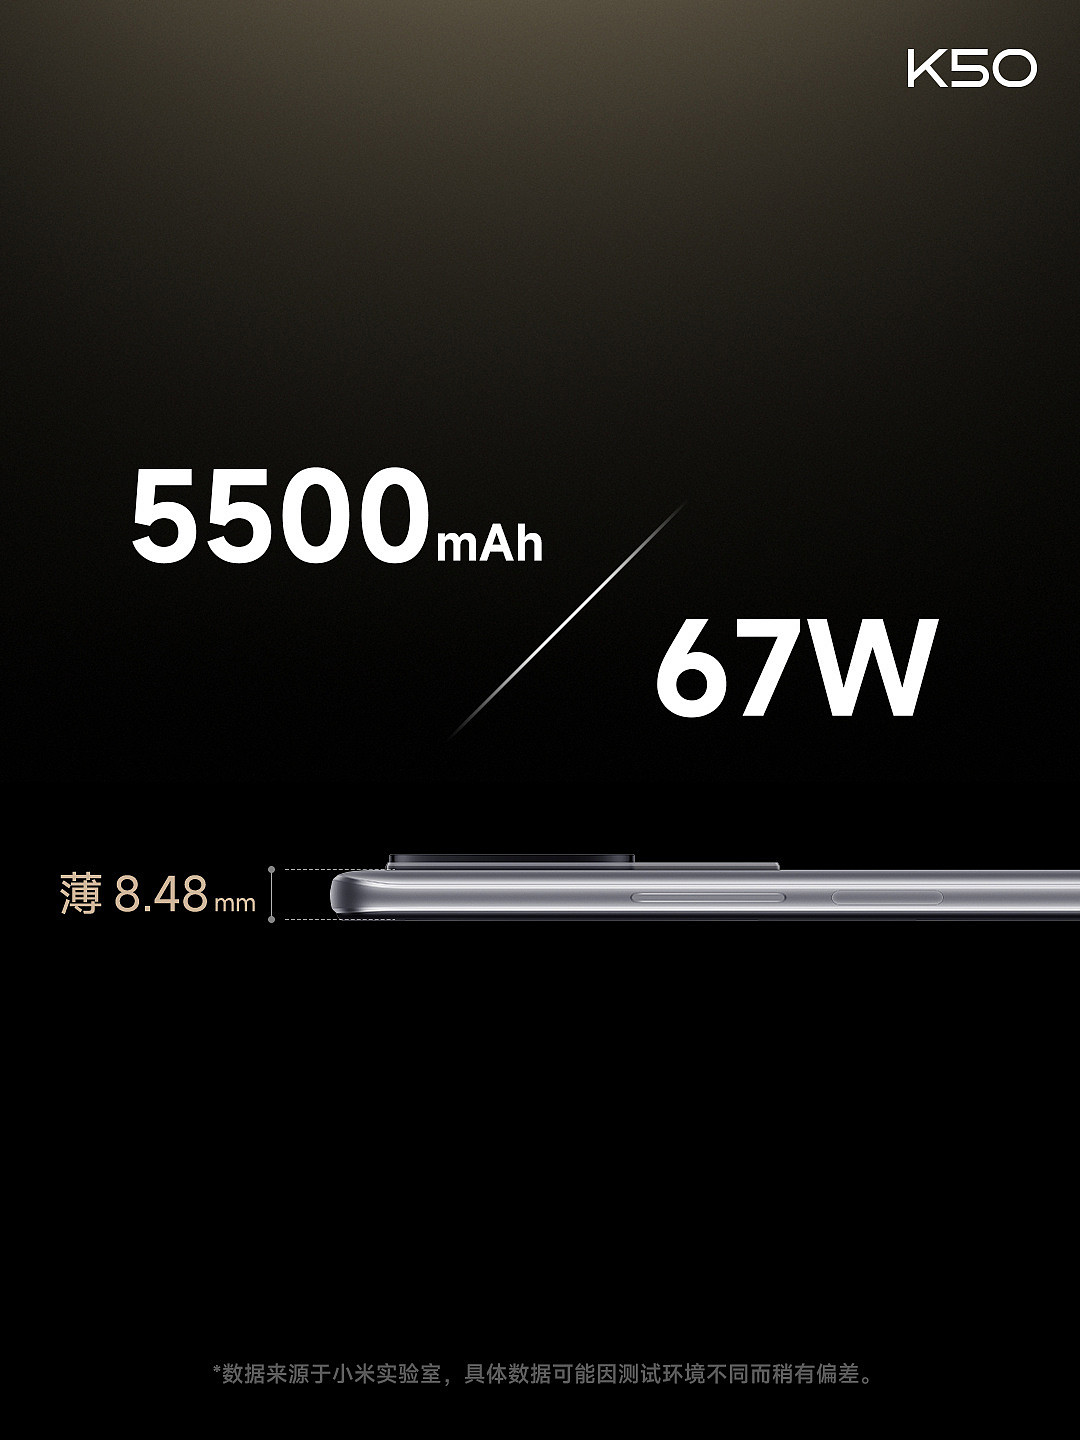 直降 750 元：Redmi K50 标准版手机 256G 储存 1849 元狂促 - 3